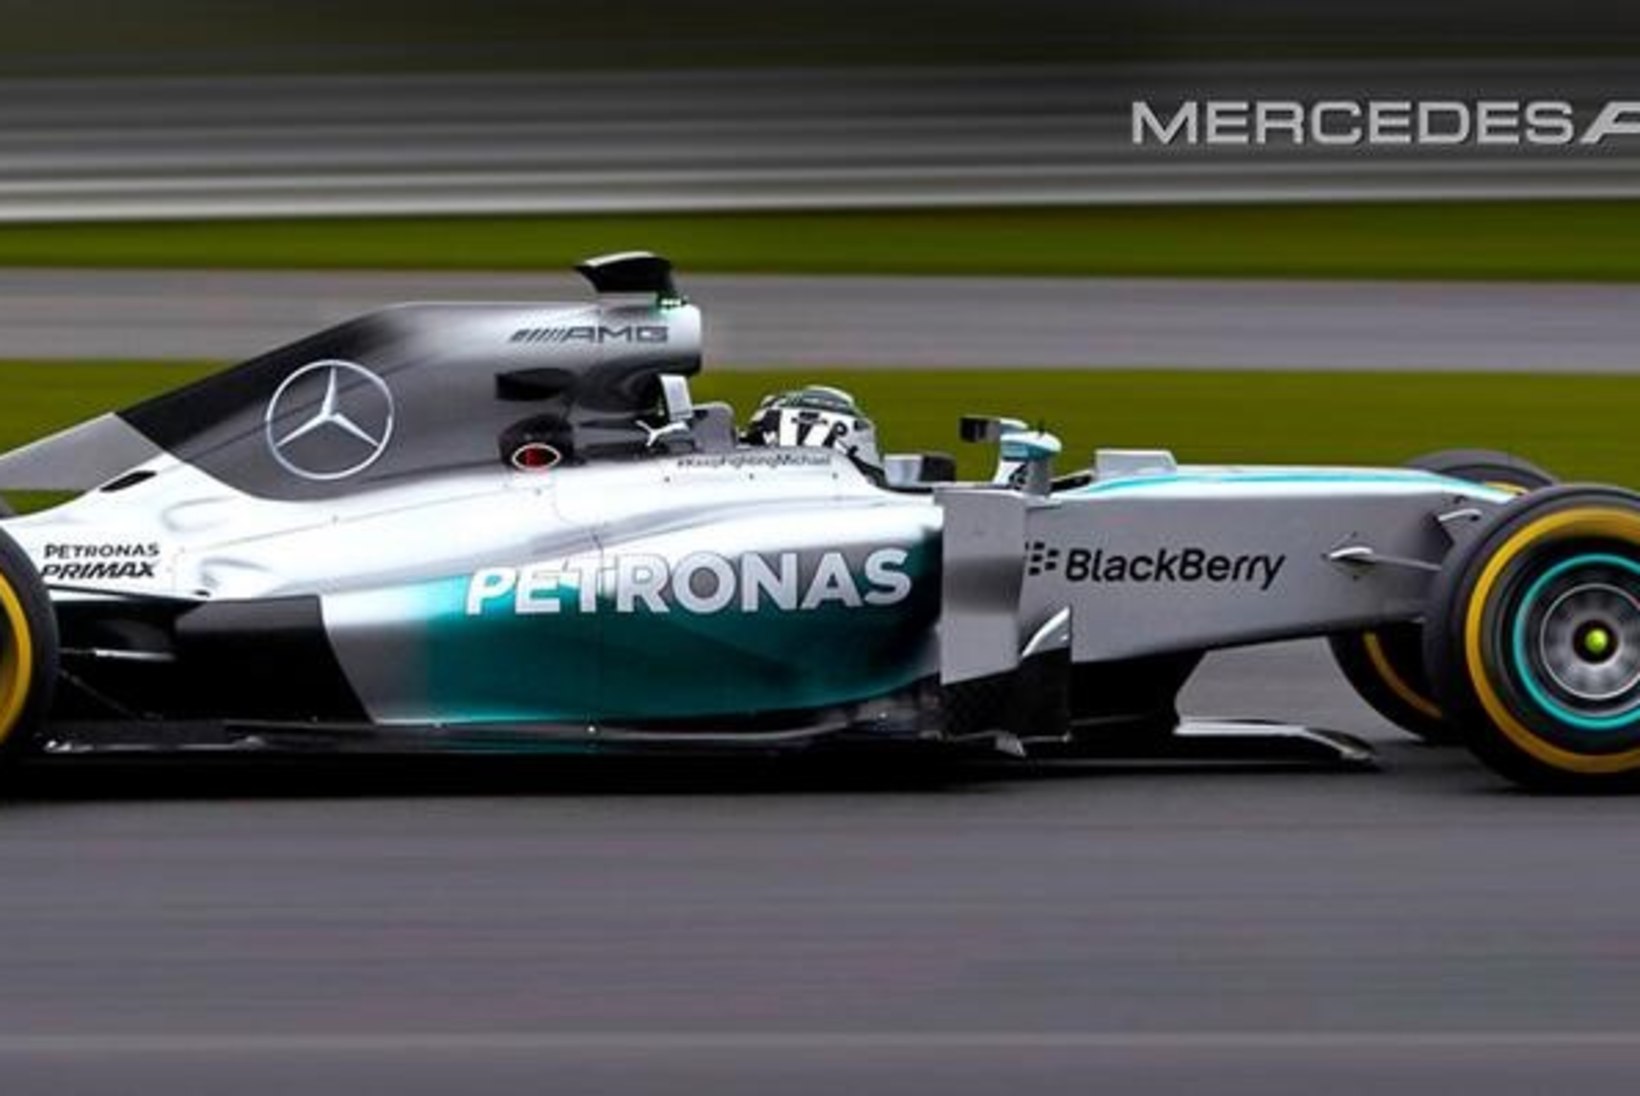 FOTOD: Mercedese F1 meeskond esitles uut vormelit, millel seisab Schumacherit innustav kiri